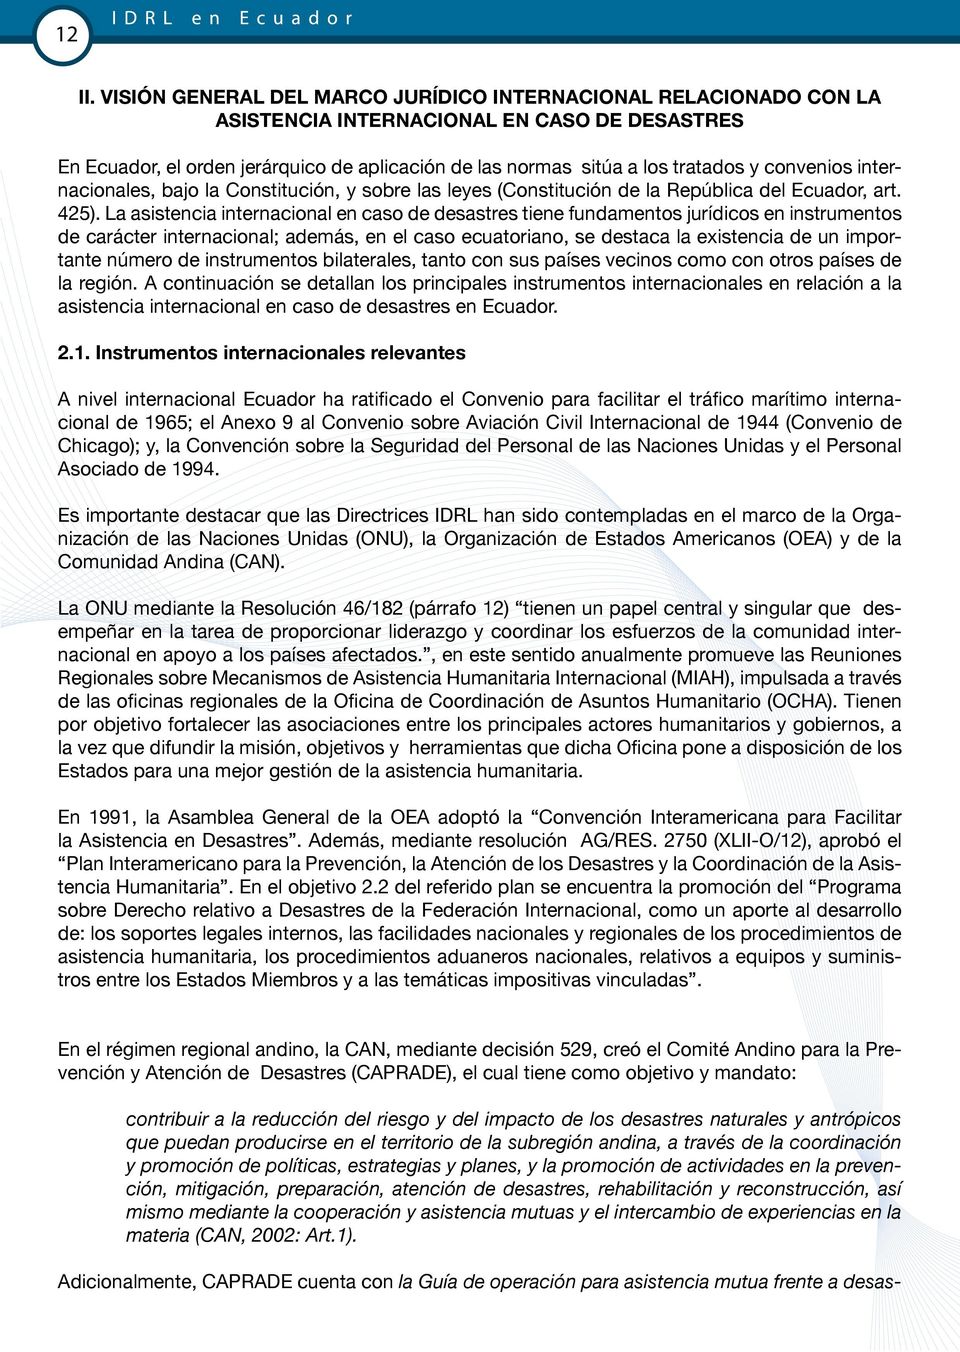 convenios internacionales, bajo la Constitución, y sobre las leyes (Constitución de la República del Ecuador, art. 425).